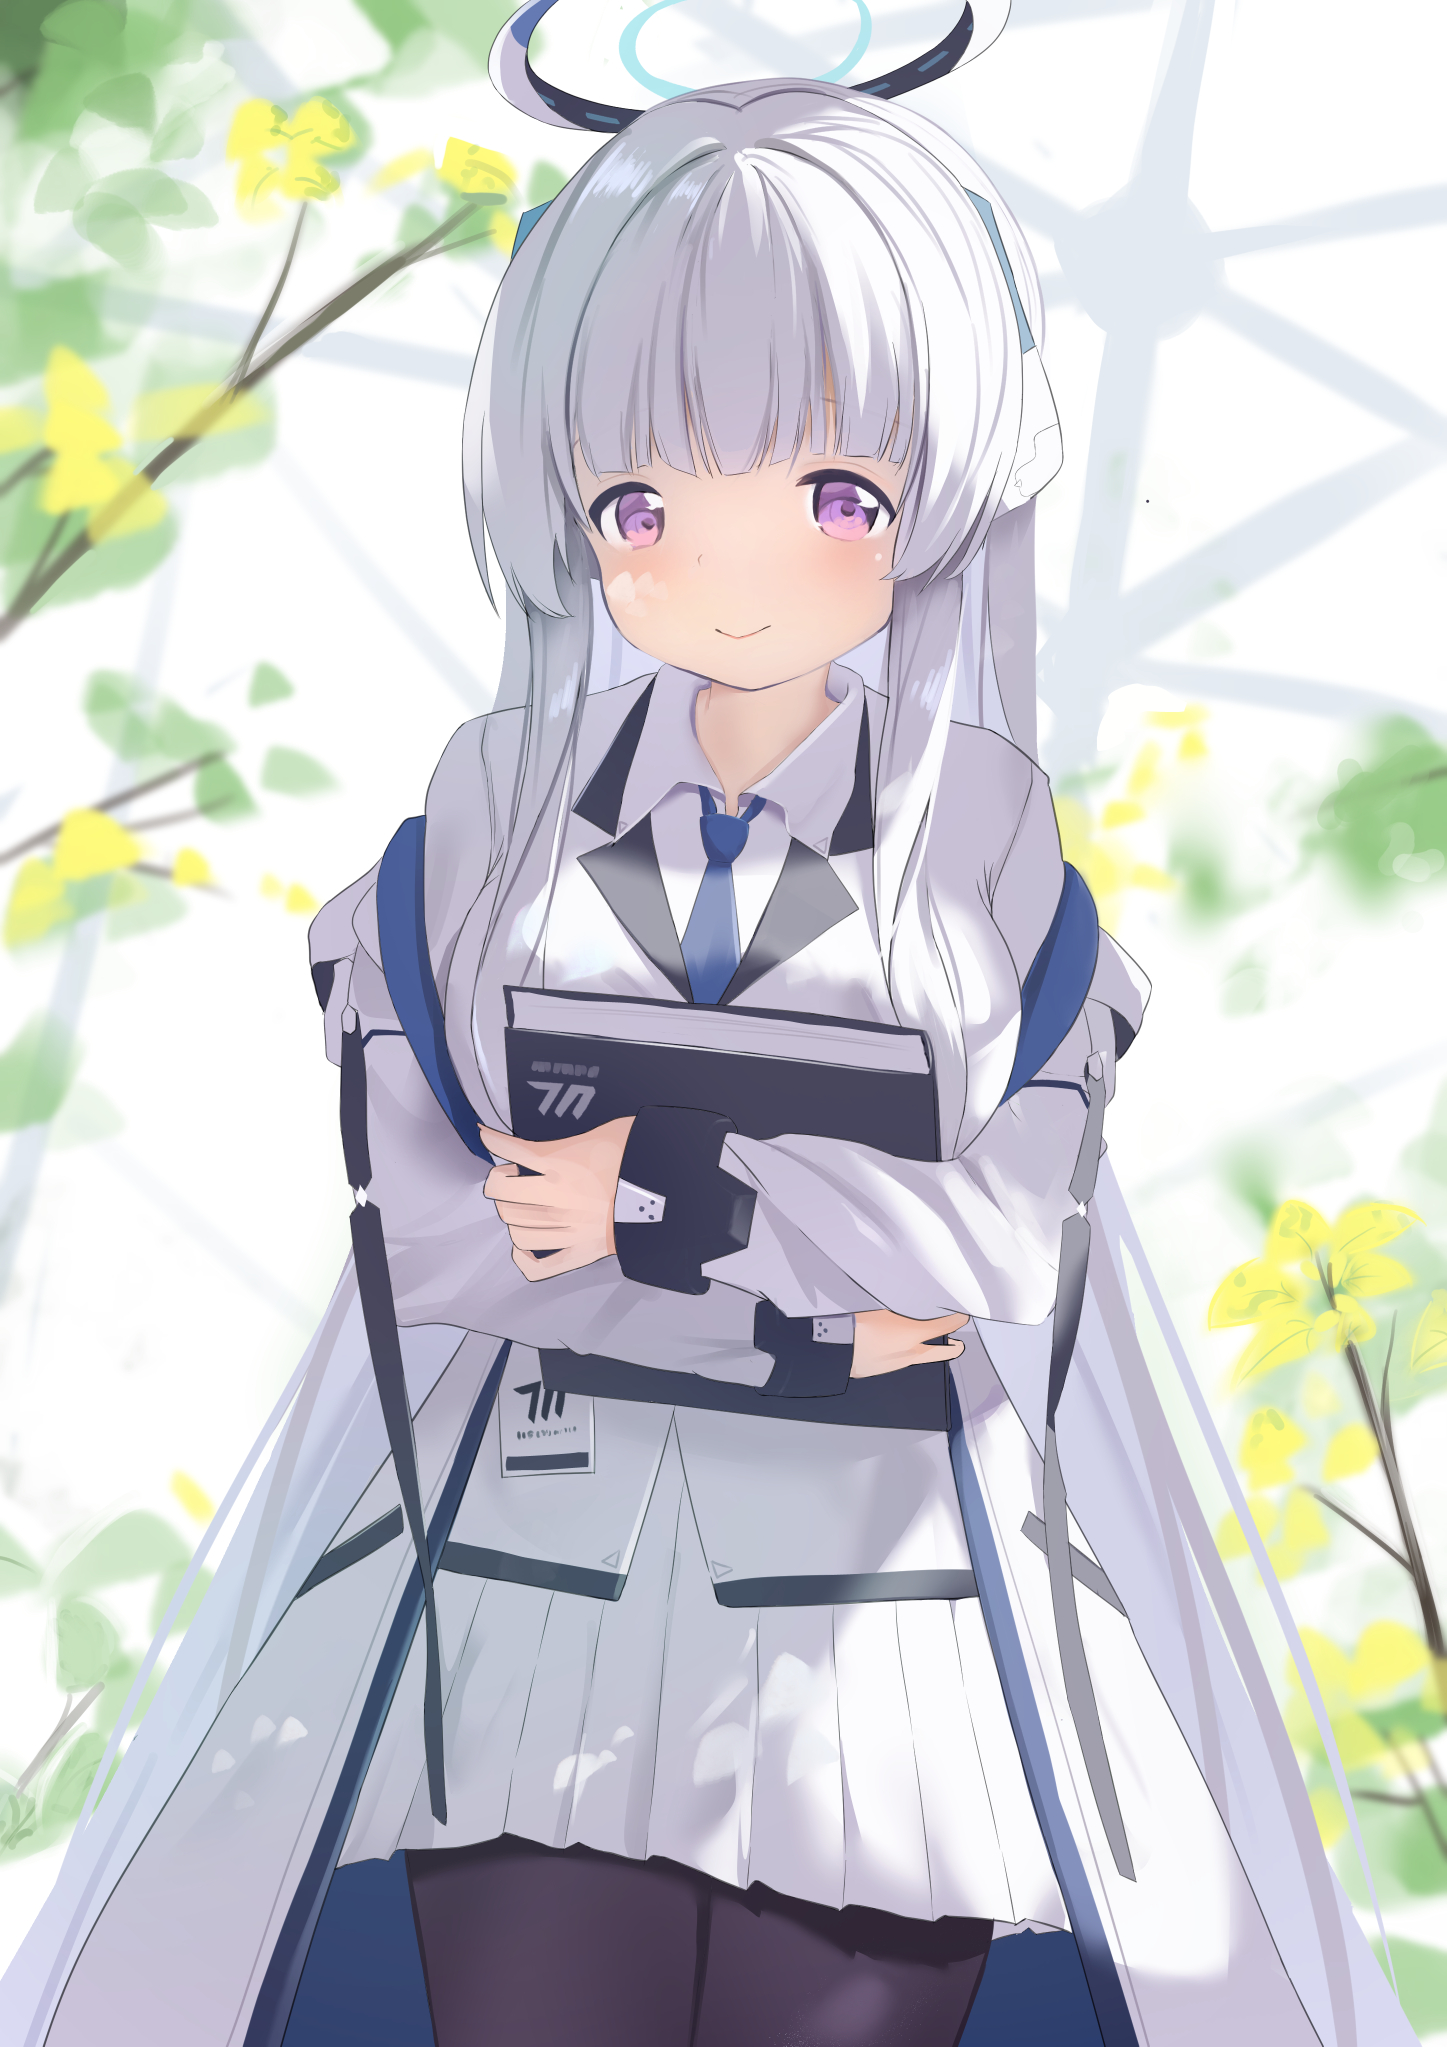 Anime Anime Girls Blue Archive Ushio Noa Long Hair White Hair Solo Artwork Digital Art Fan Art Verti 1447x2047